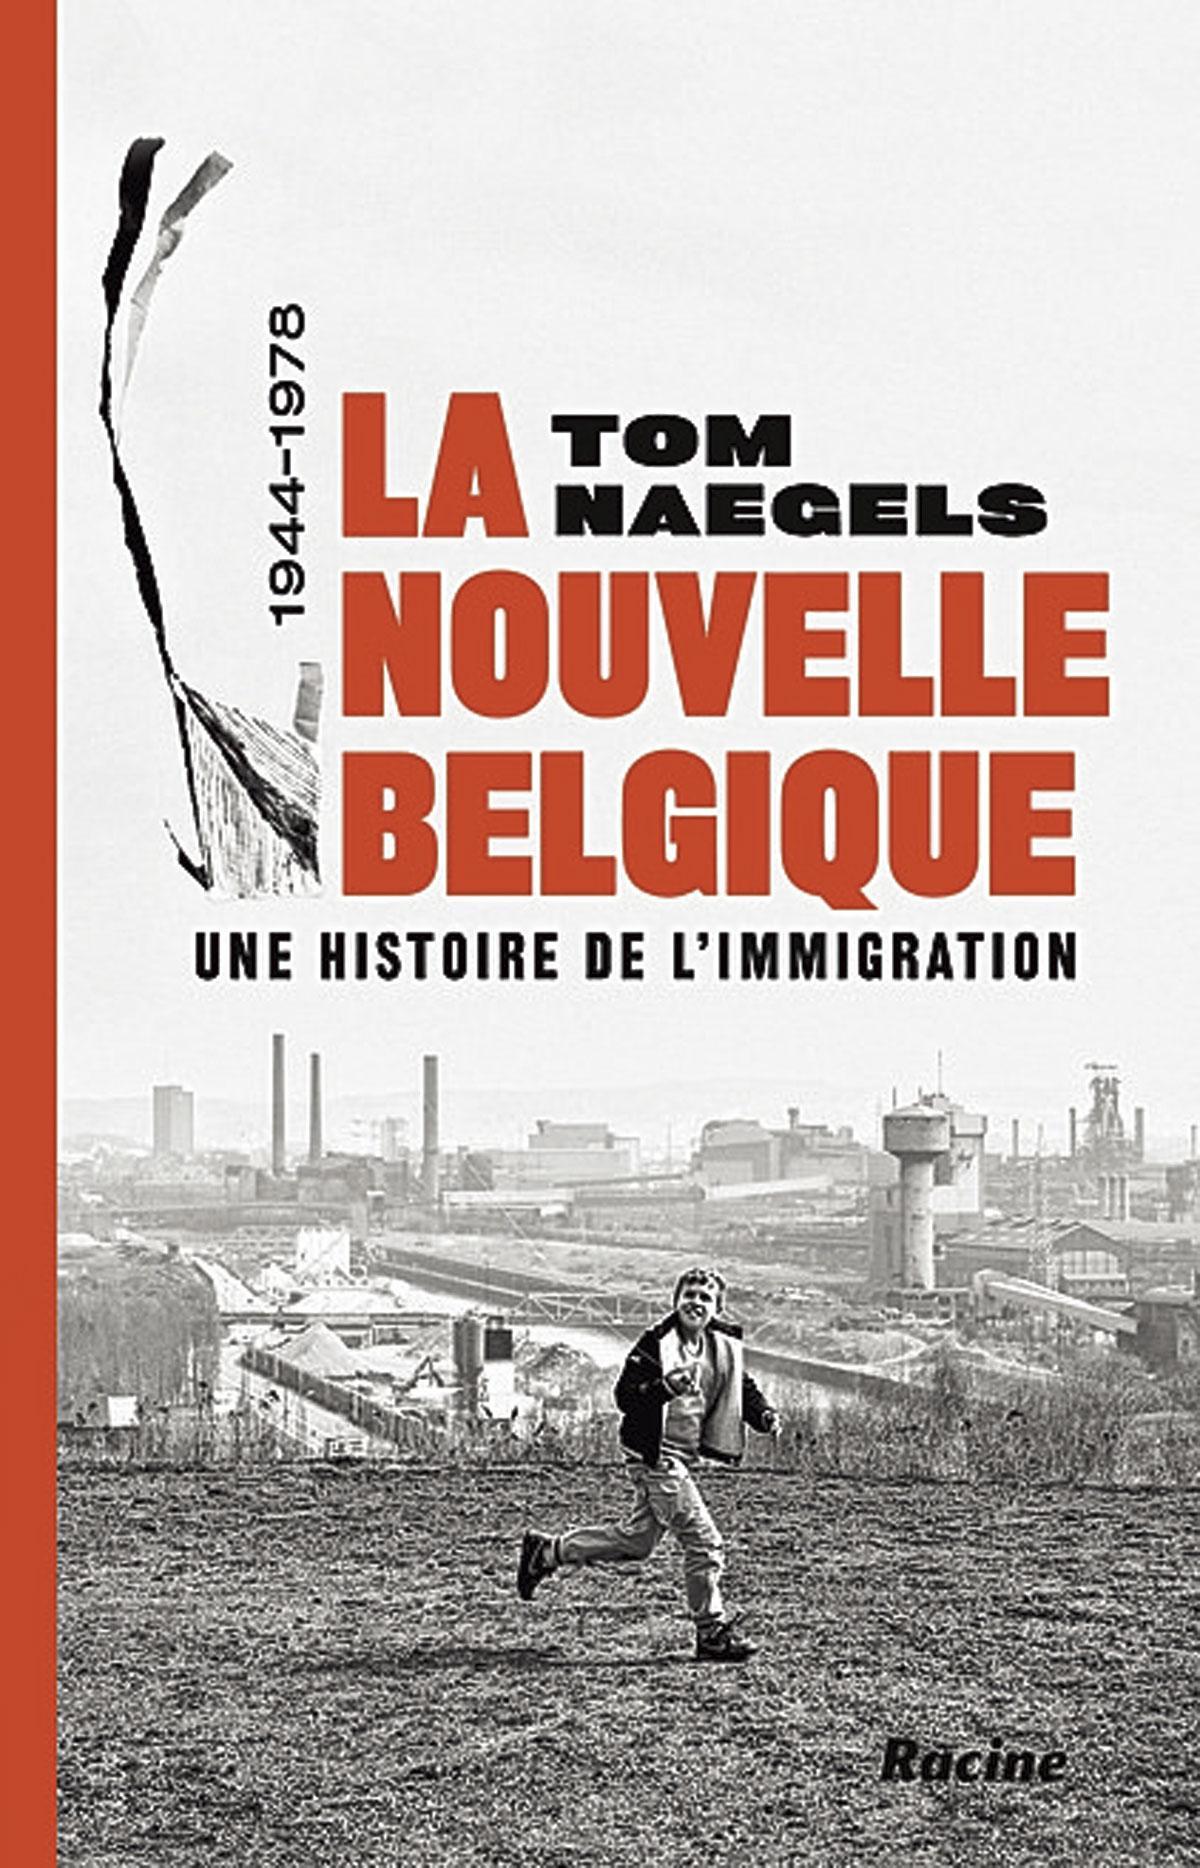 (1) La Nouvelle Belgique. Une histoire de l’immigration 1944‑1978, par Tom Naegels, Racine, 2021, 415 p.